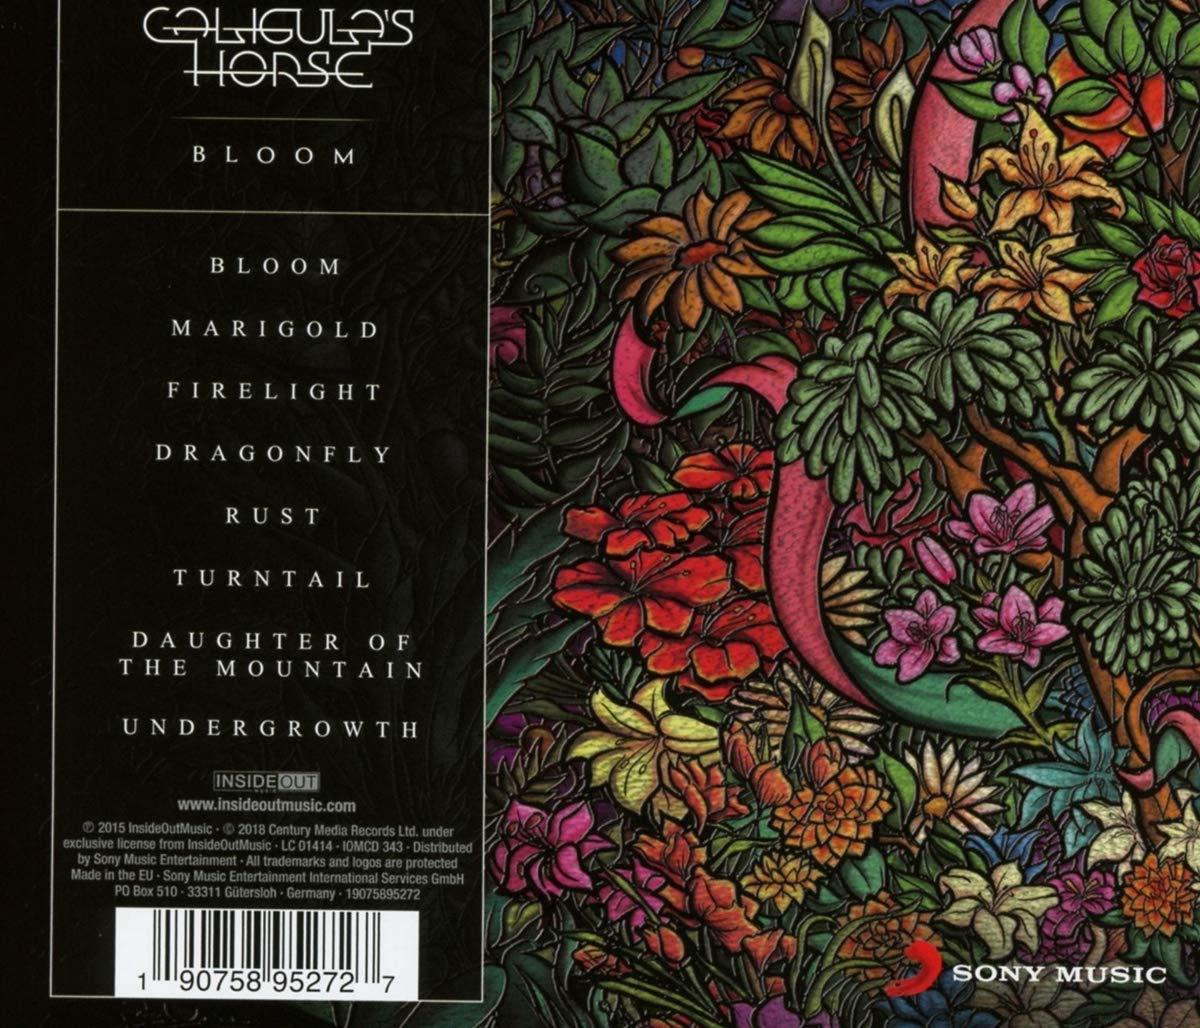 Caligula\'s Horse (CD) - Bloom 